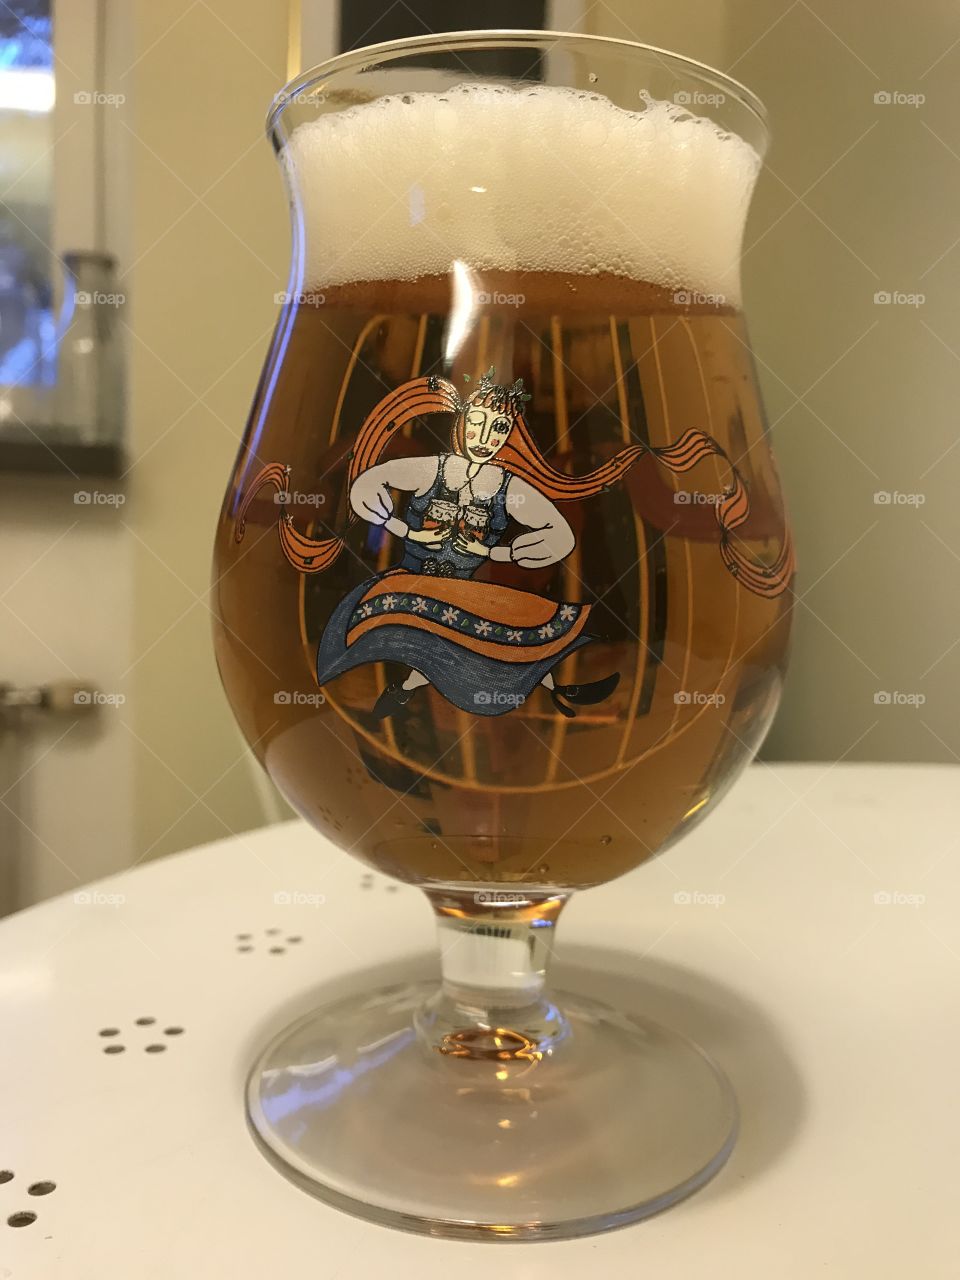 Fancy glass of beer